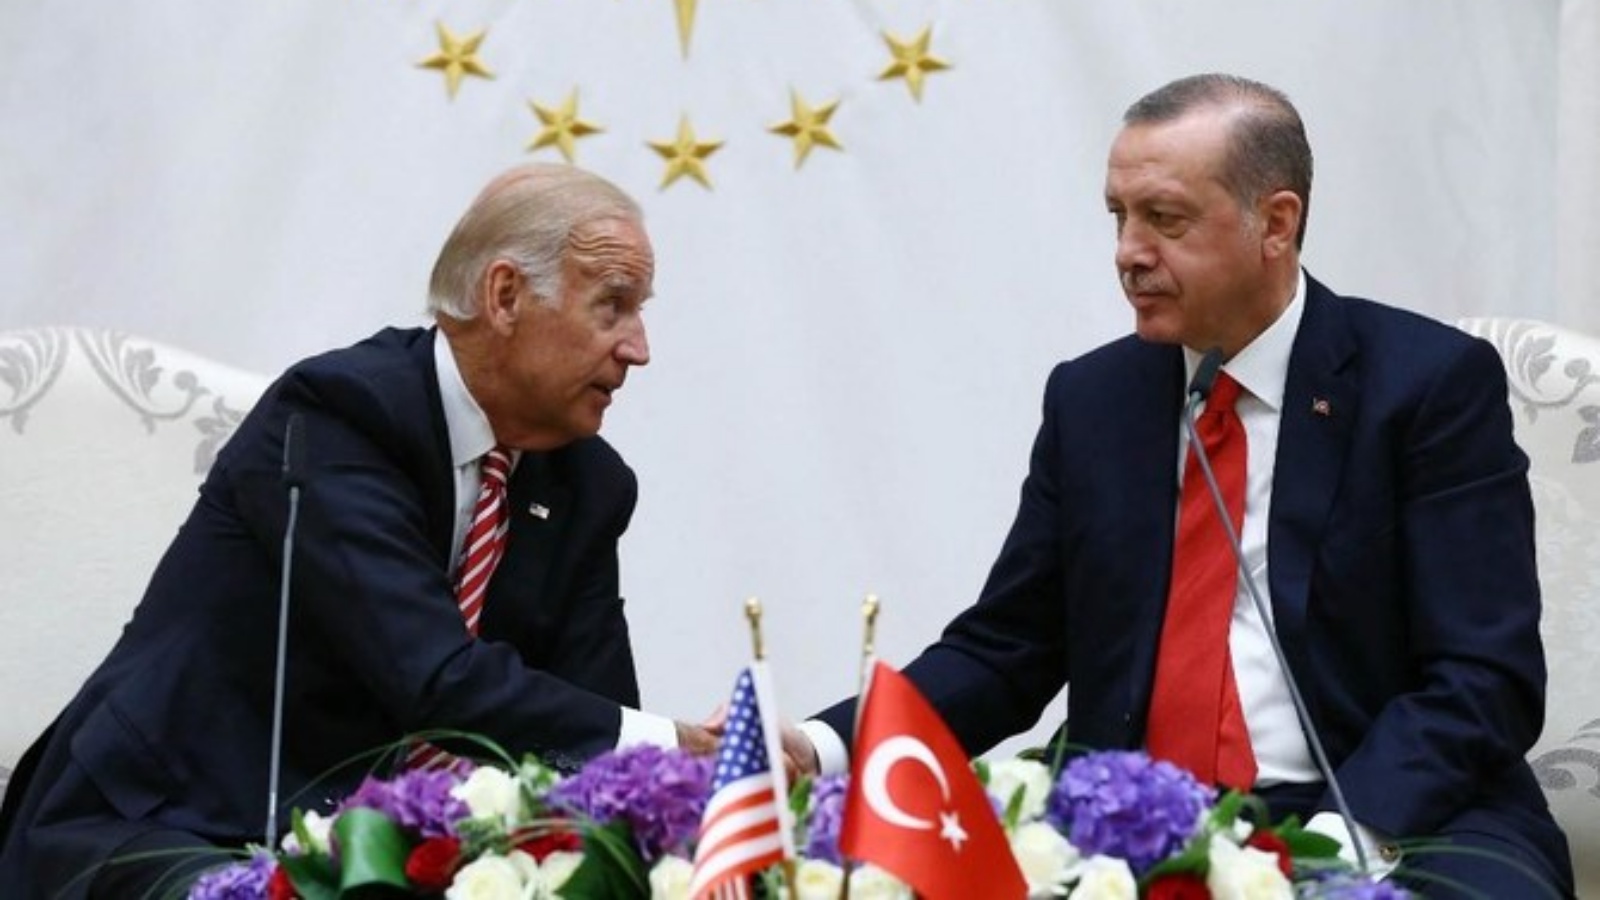 الرئيس الأميركي جو بايدن تحدث مع الرئيس التركي رجب طيب أردوغان يوم الجمعة واتفق الزعيمان على الاجتماع خلال قمة الناتو في يونيو